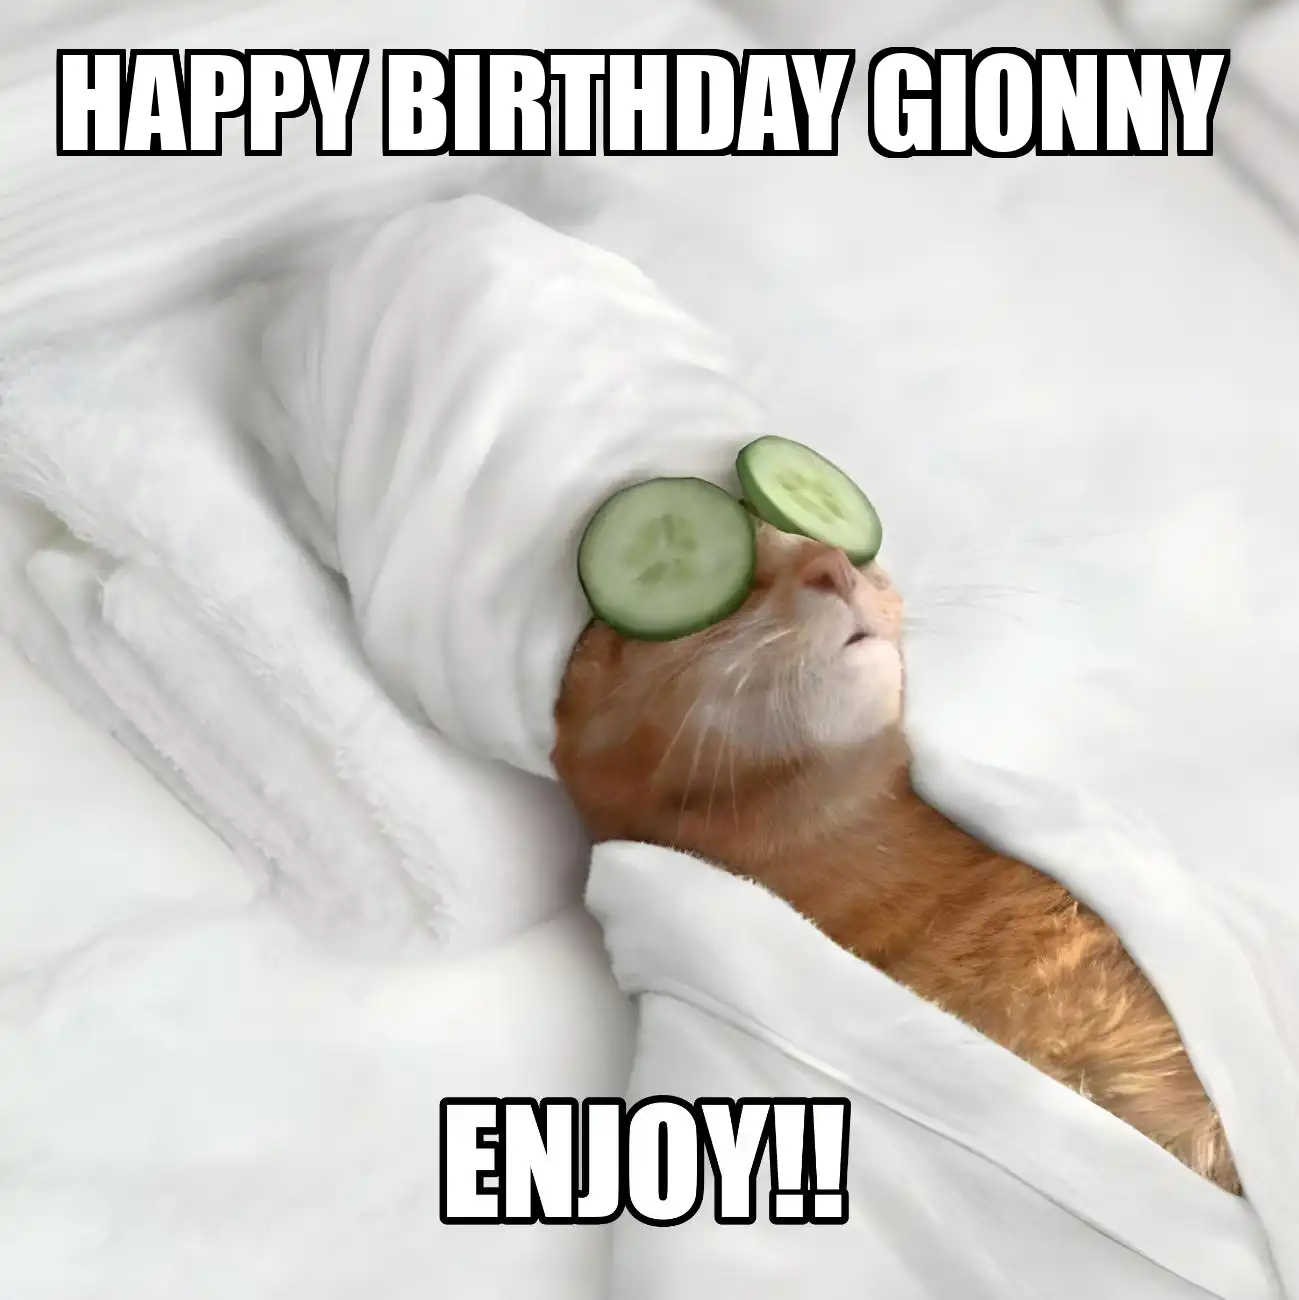 Happy Birthday Gionny Enjoy Cat Meme